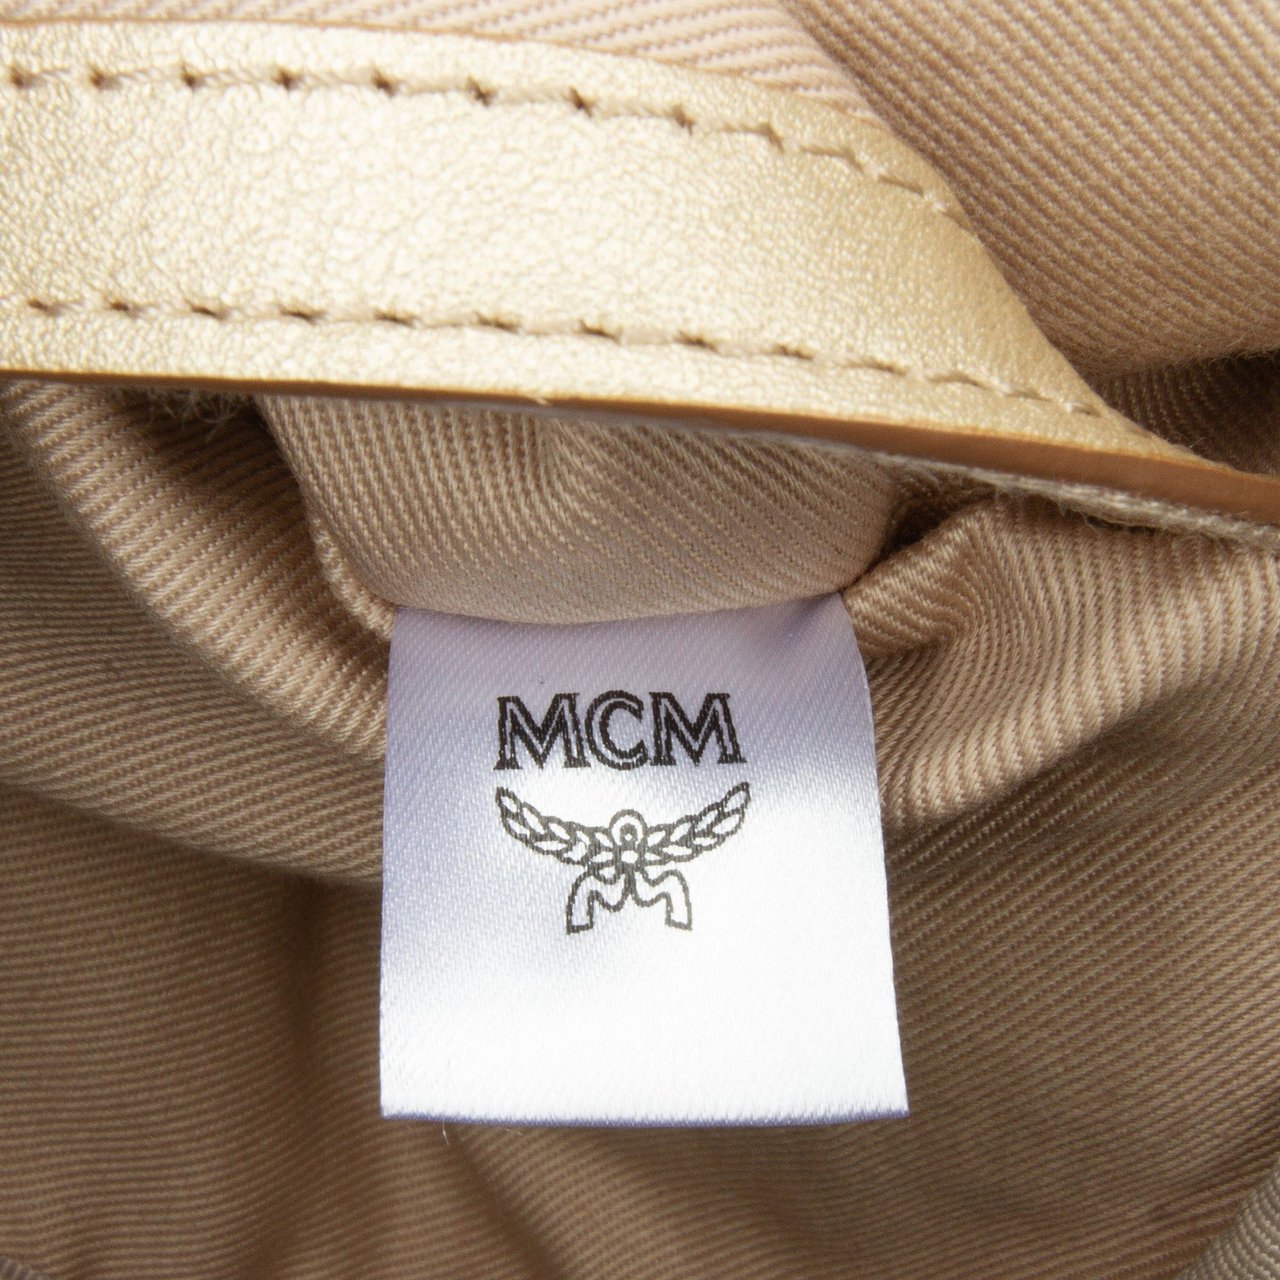 MCM Visetos Stark Flight Logo Backpack Bruin